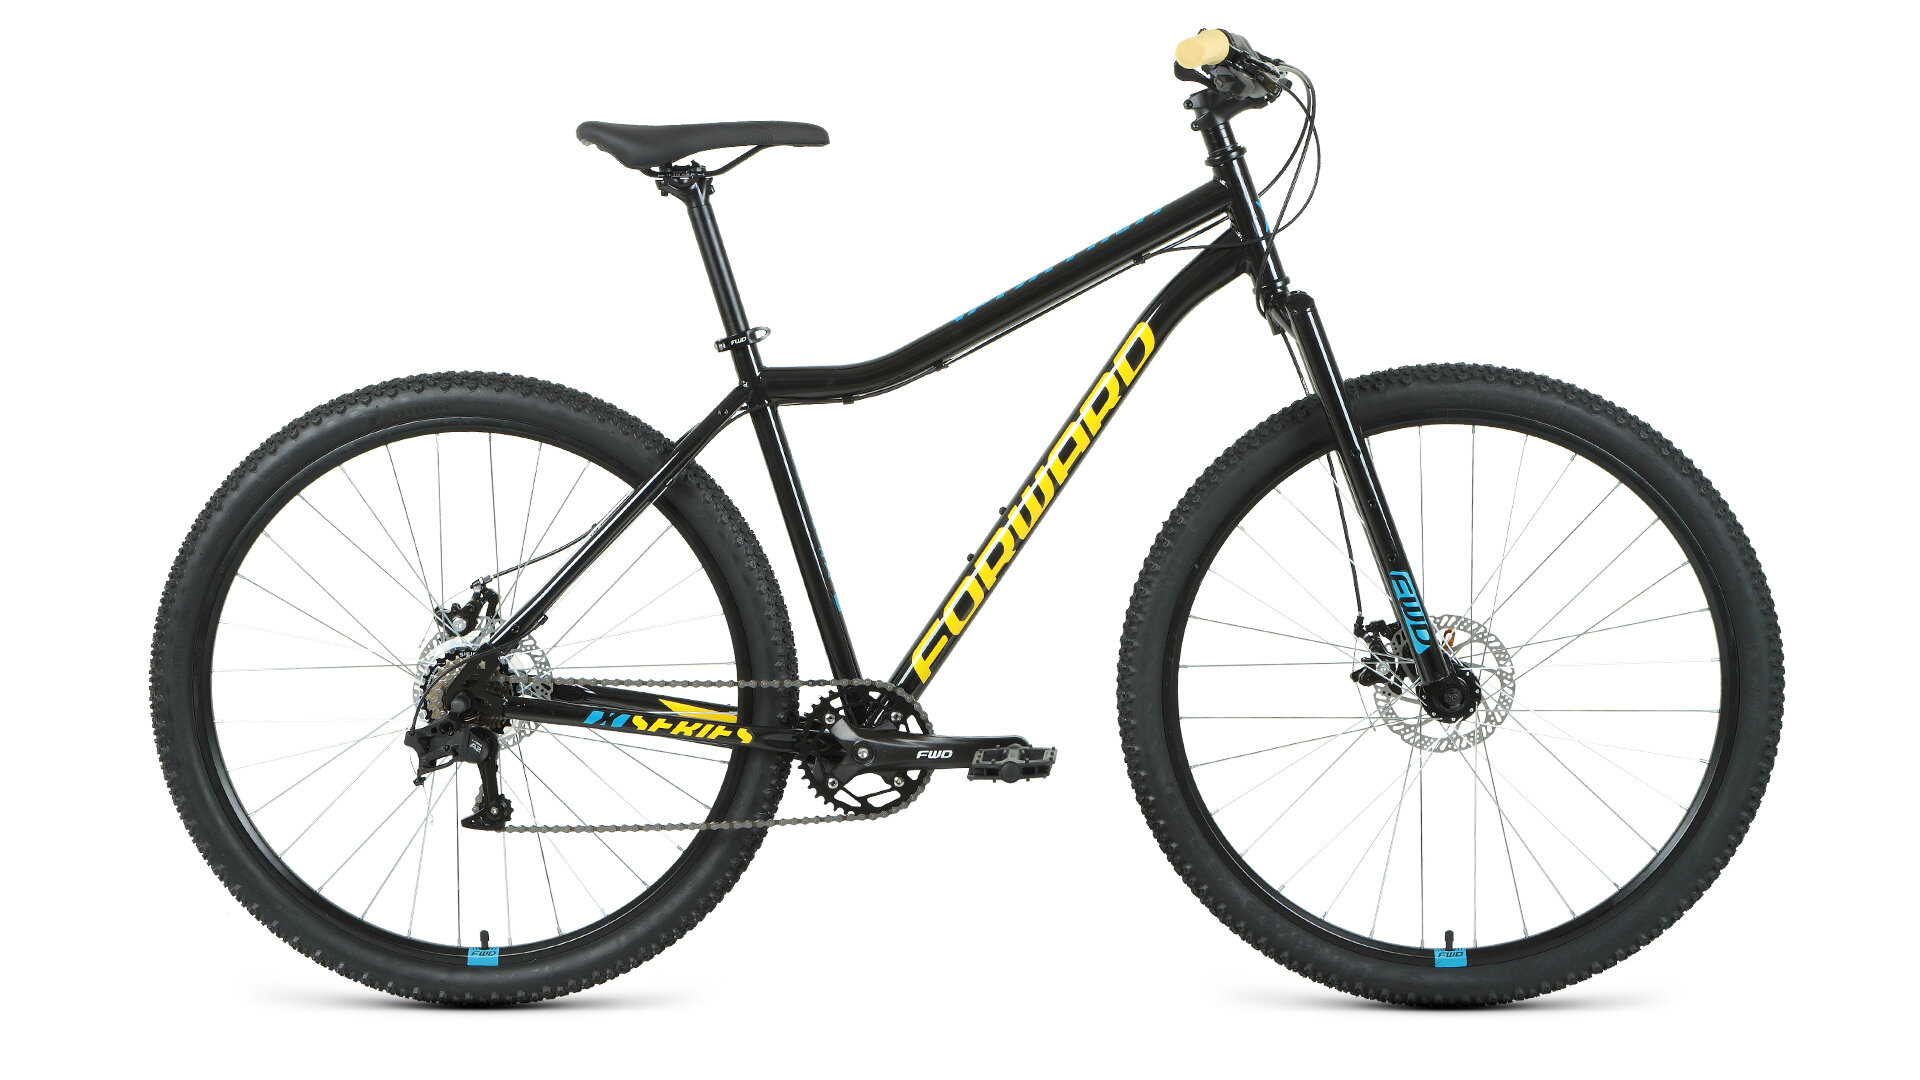 Горный велосипед Forward Sporting 29 X, год 2021, ростовка 19, цвет Черный-Желтый